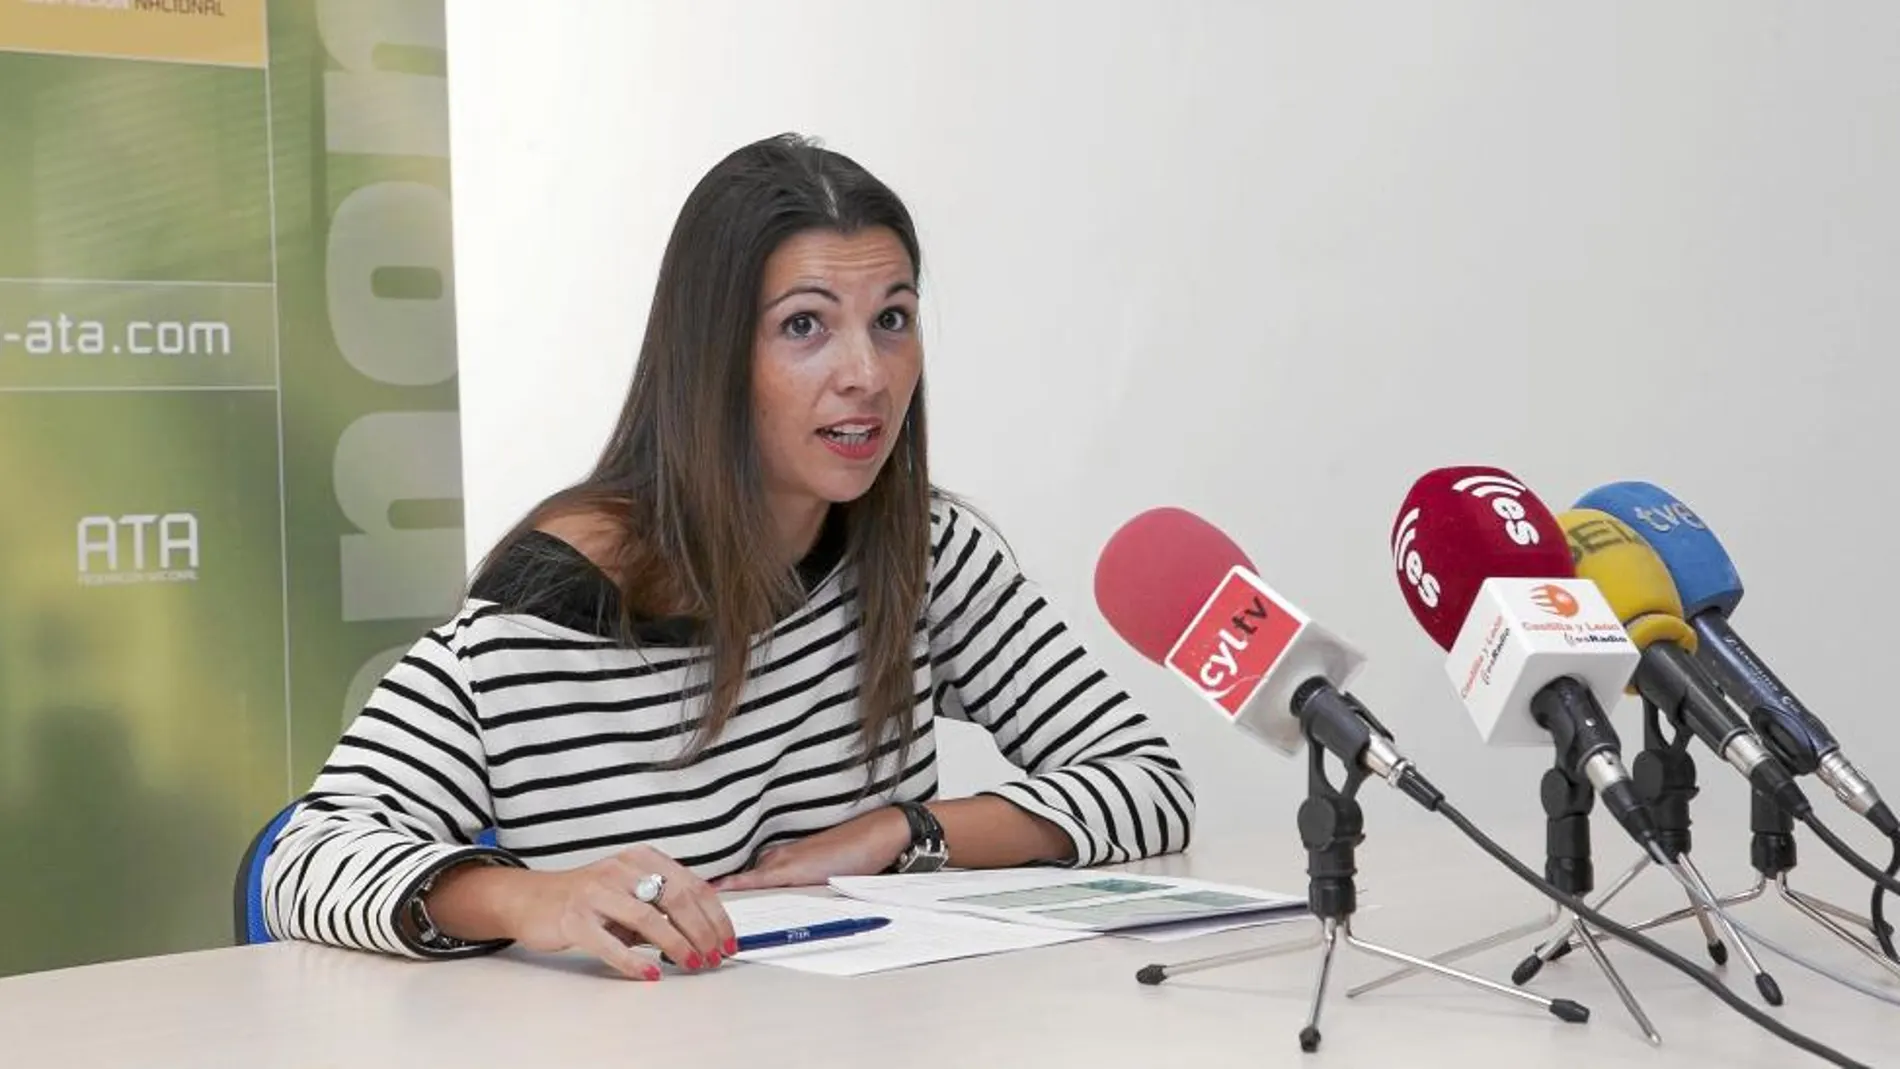 La presidenta de la Asociación de Trabajadores Autónomos en Castilla y León, Soraya Mayo